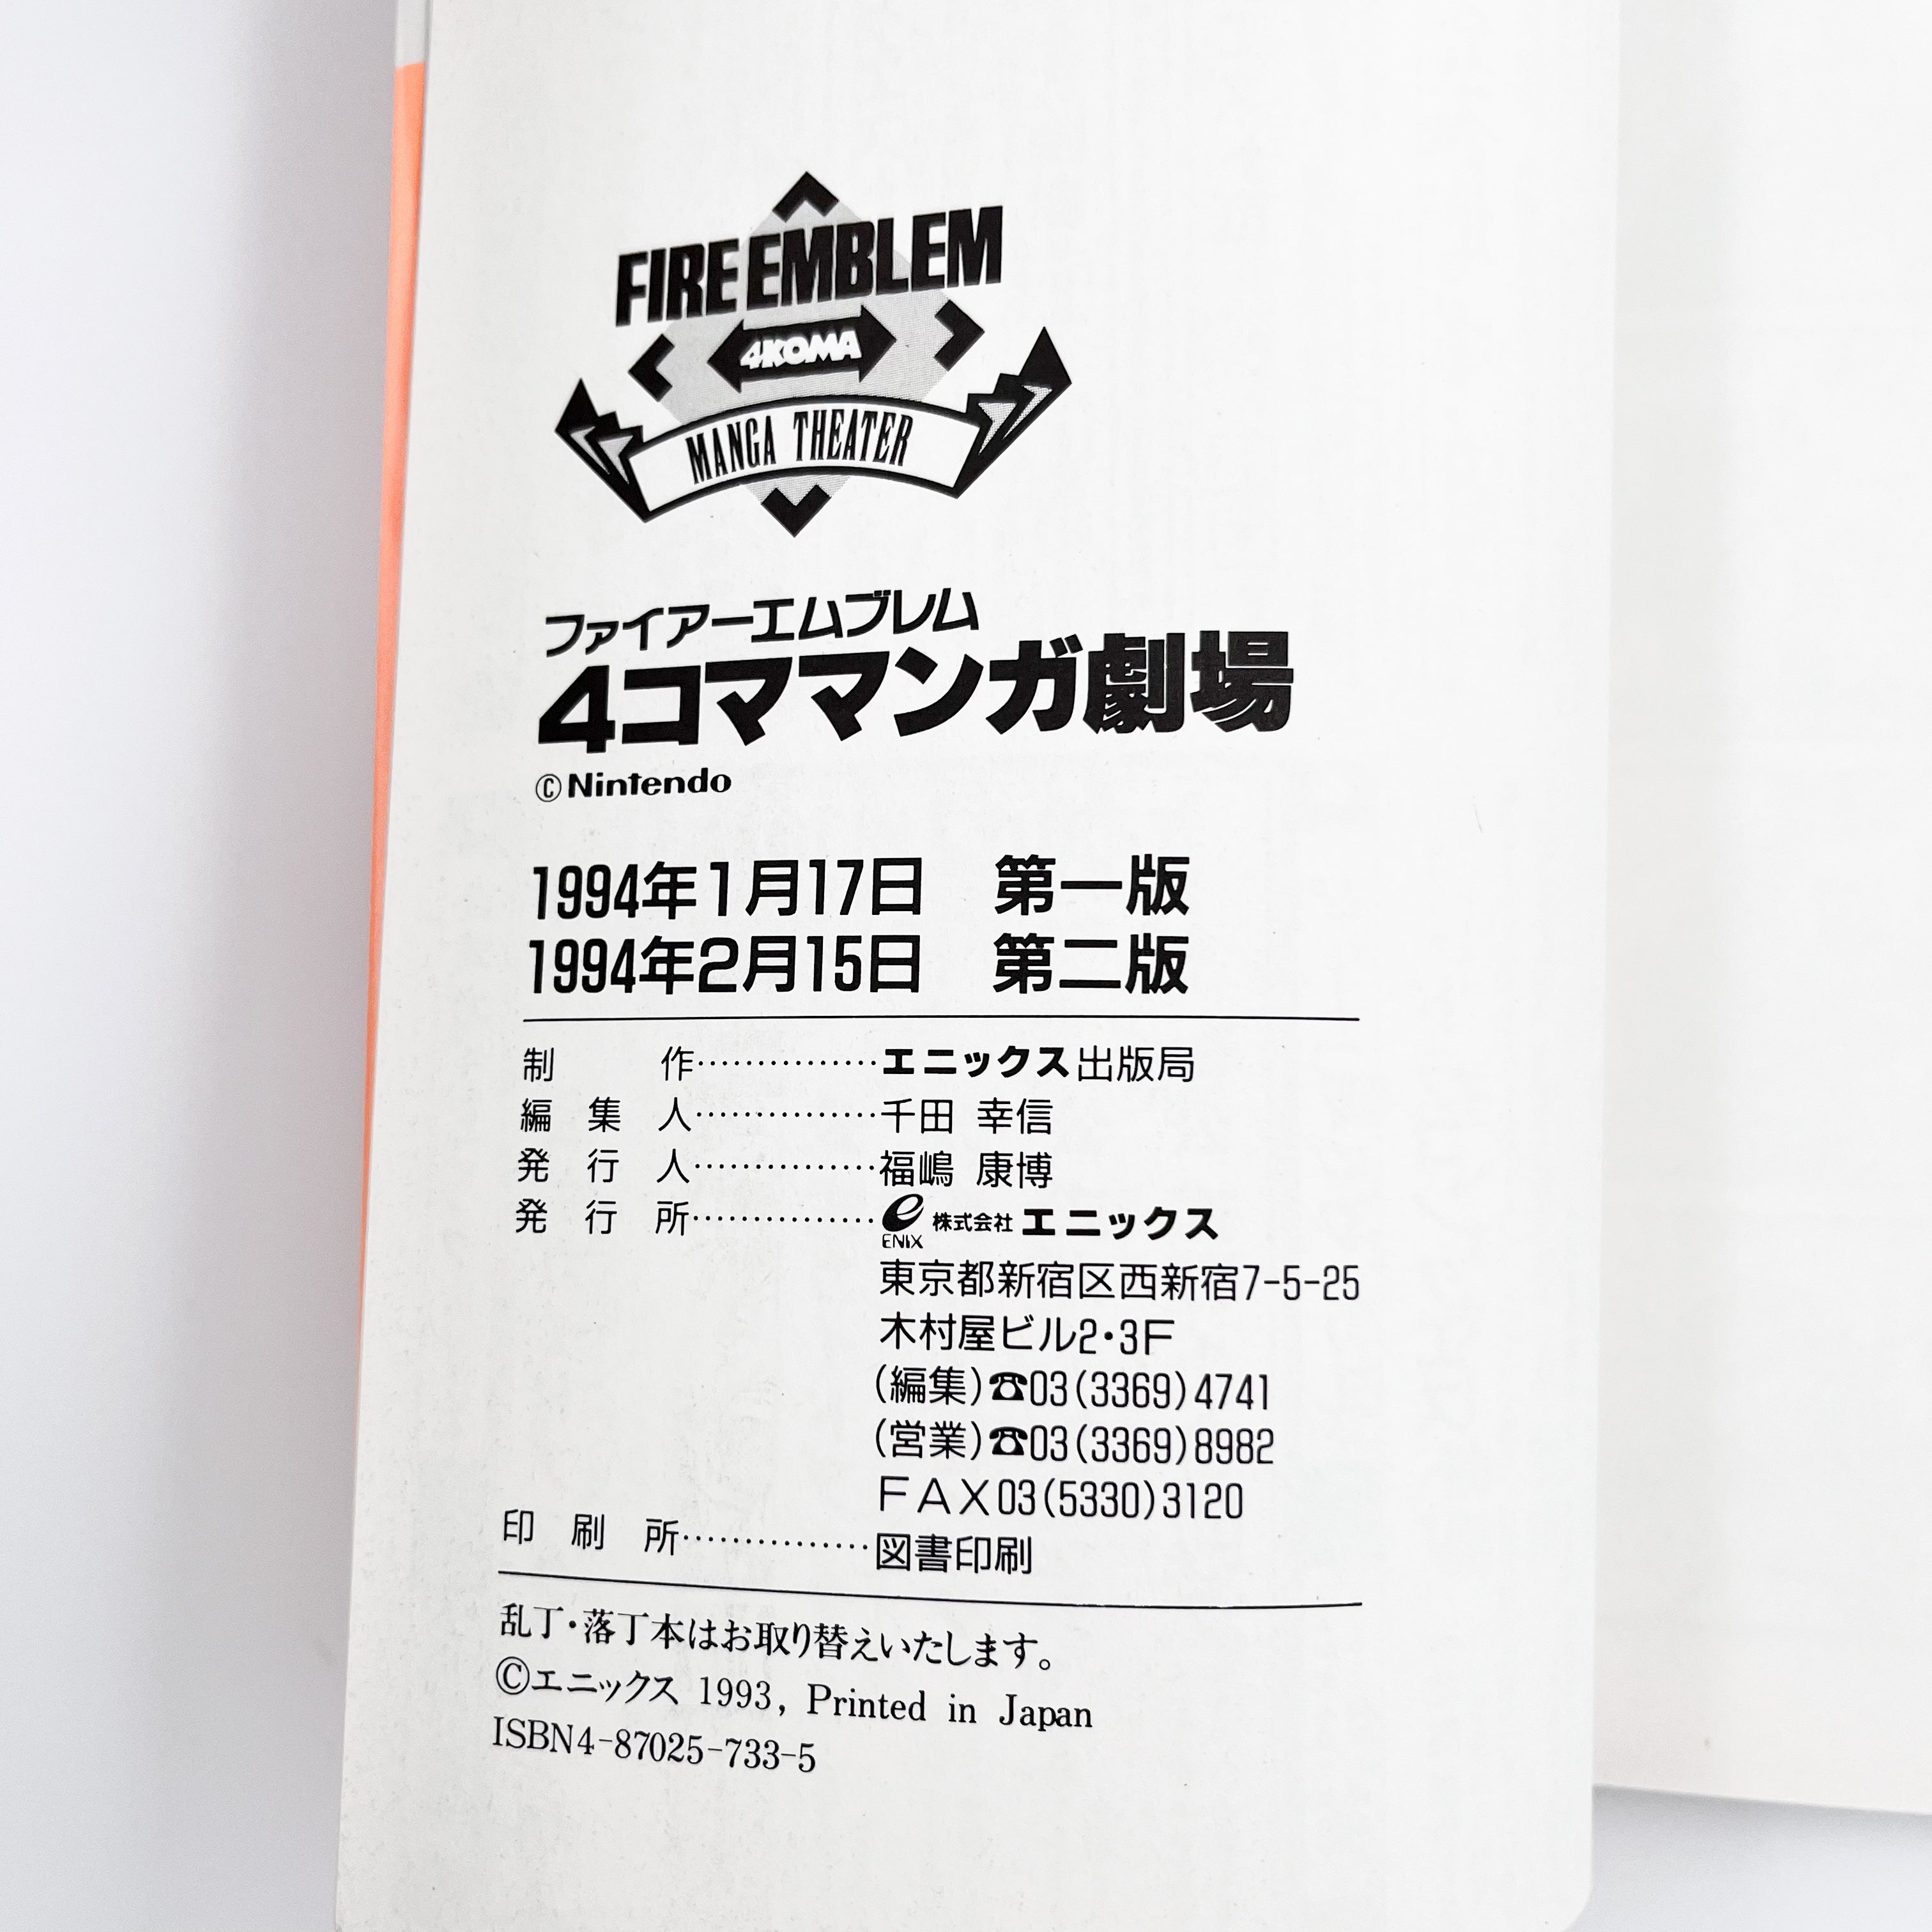 Fire Emblem 4koma Manga Theater Information